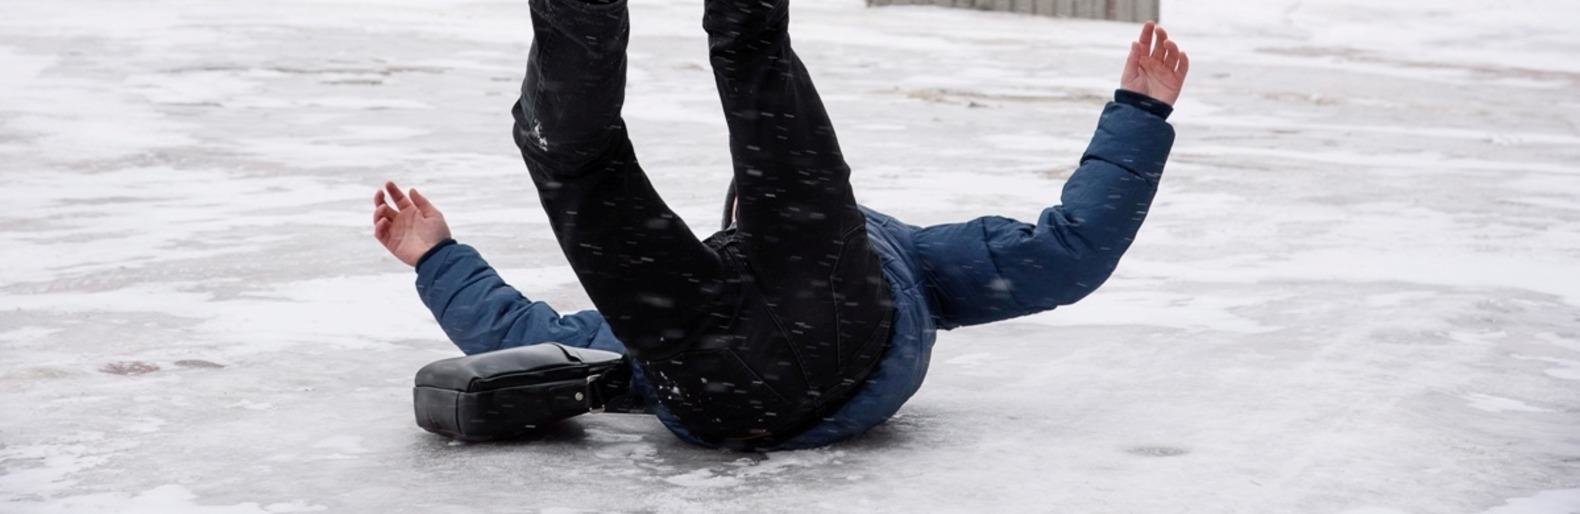 Гололед. Поскользнулся на льду. Человек падает на льду. Затылком об лед